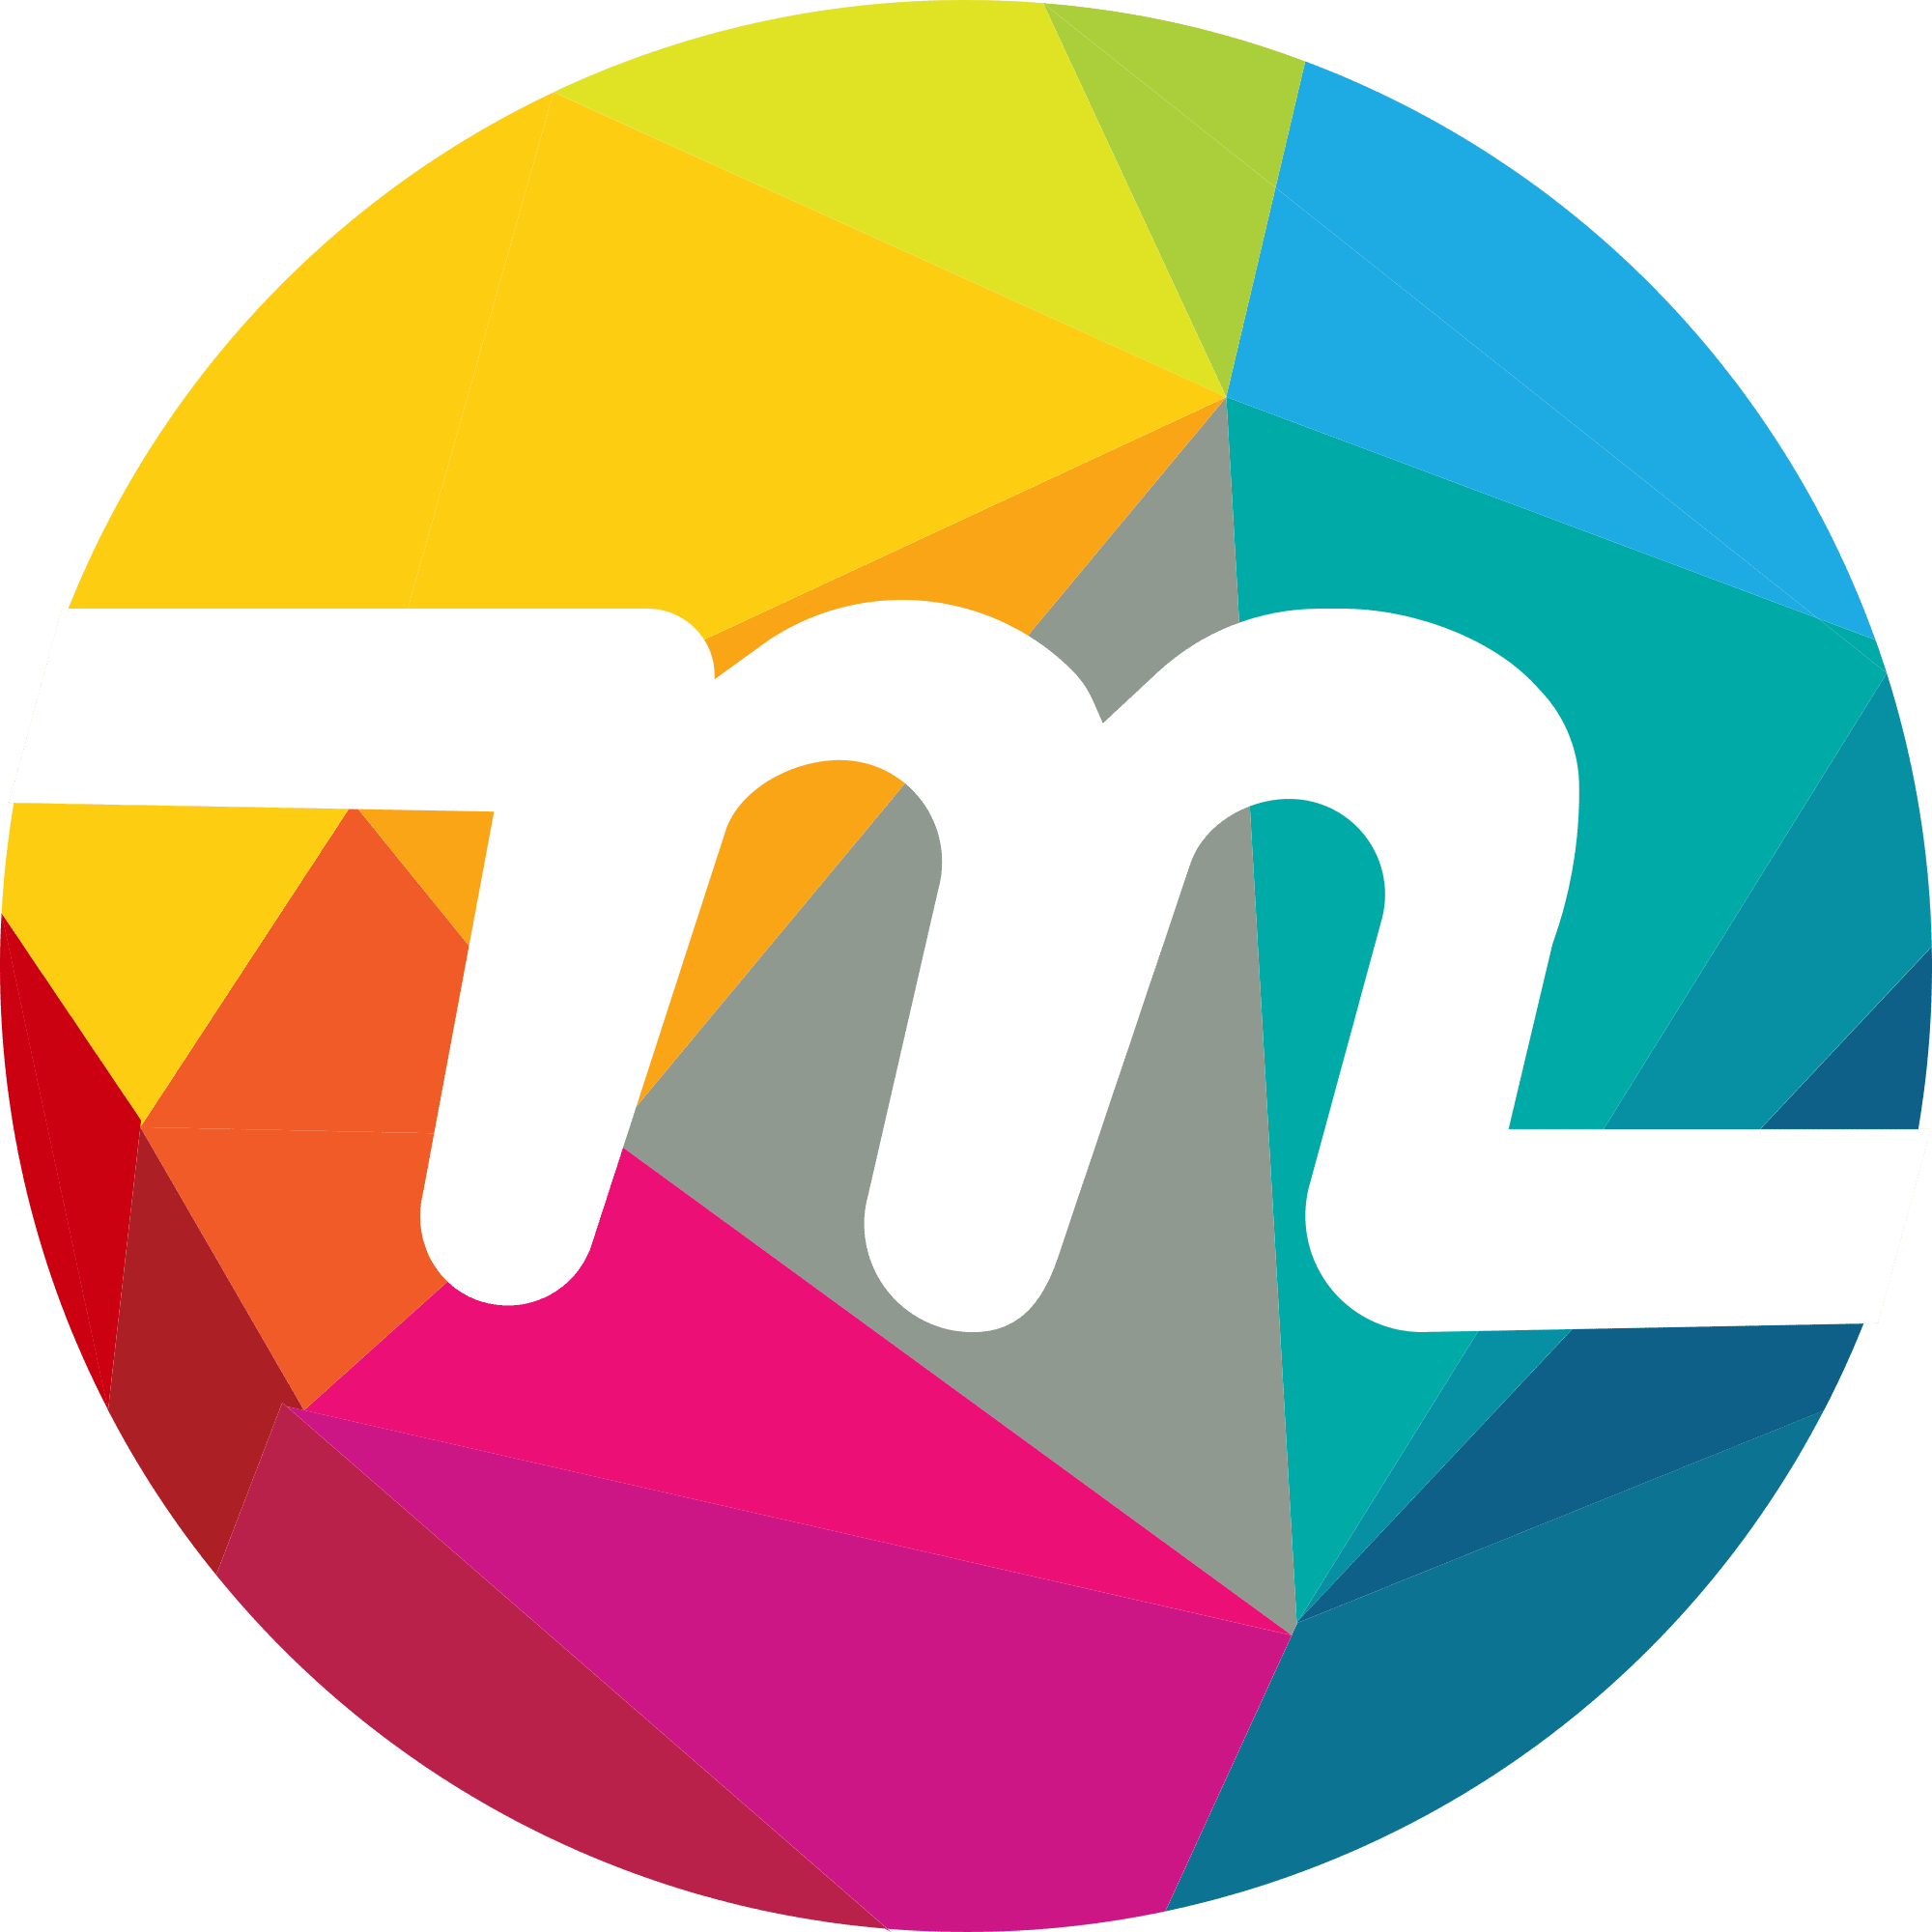 Myriad logo in png format